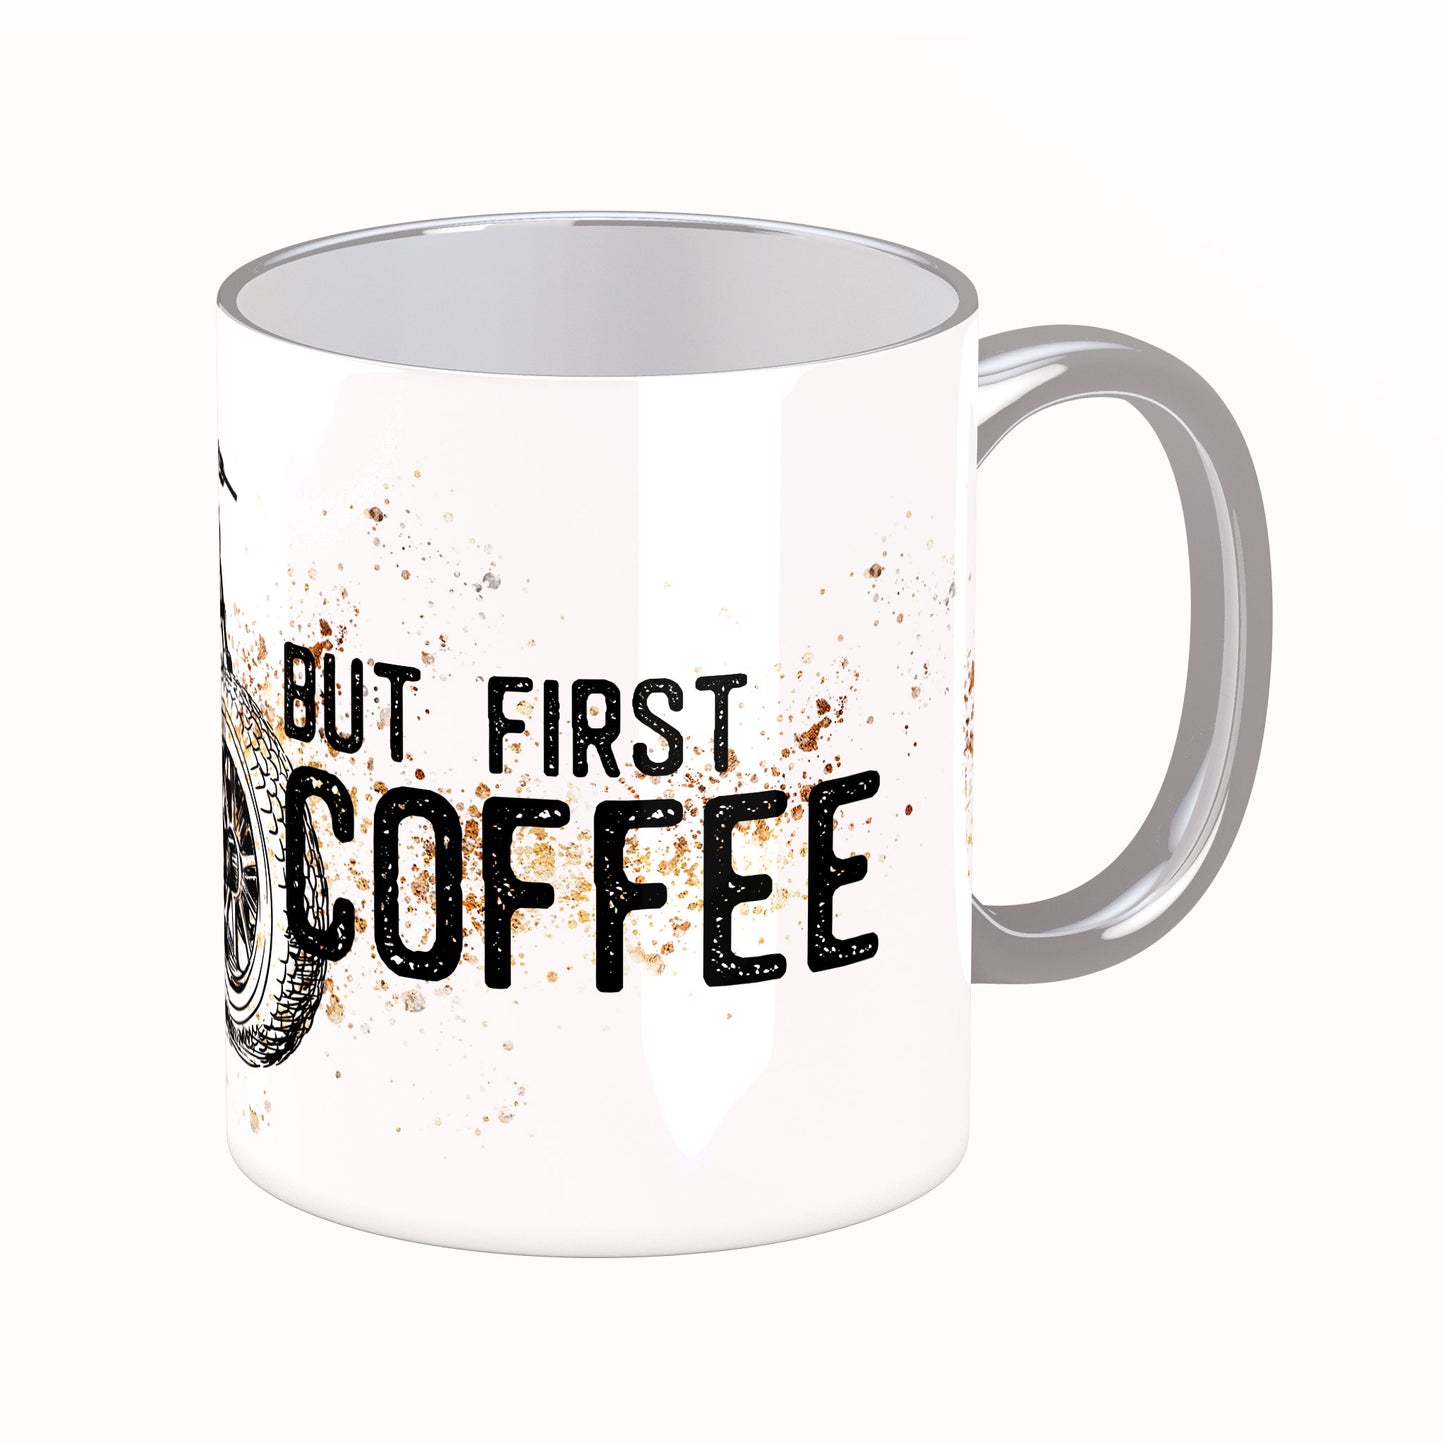 Tasse mit Spruch: But first coffee